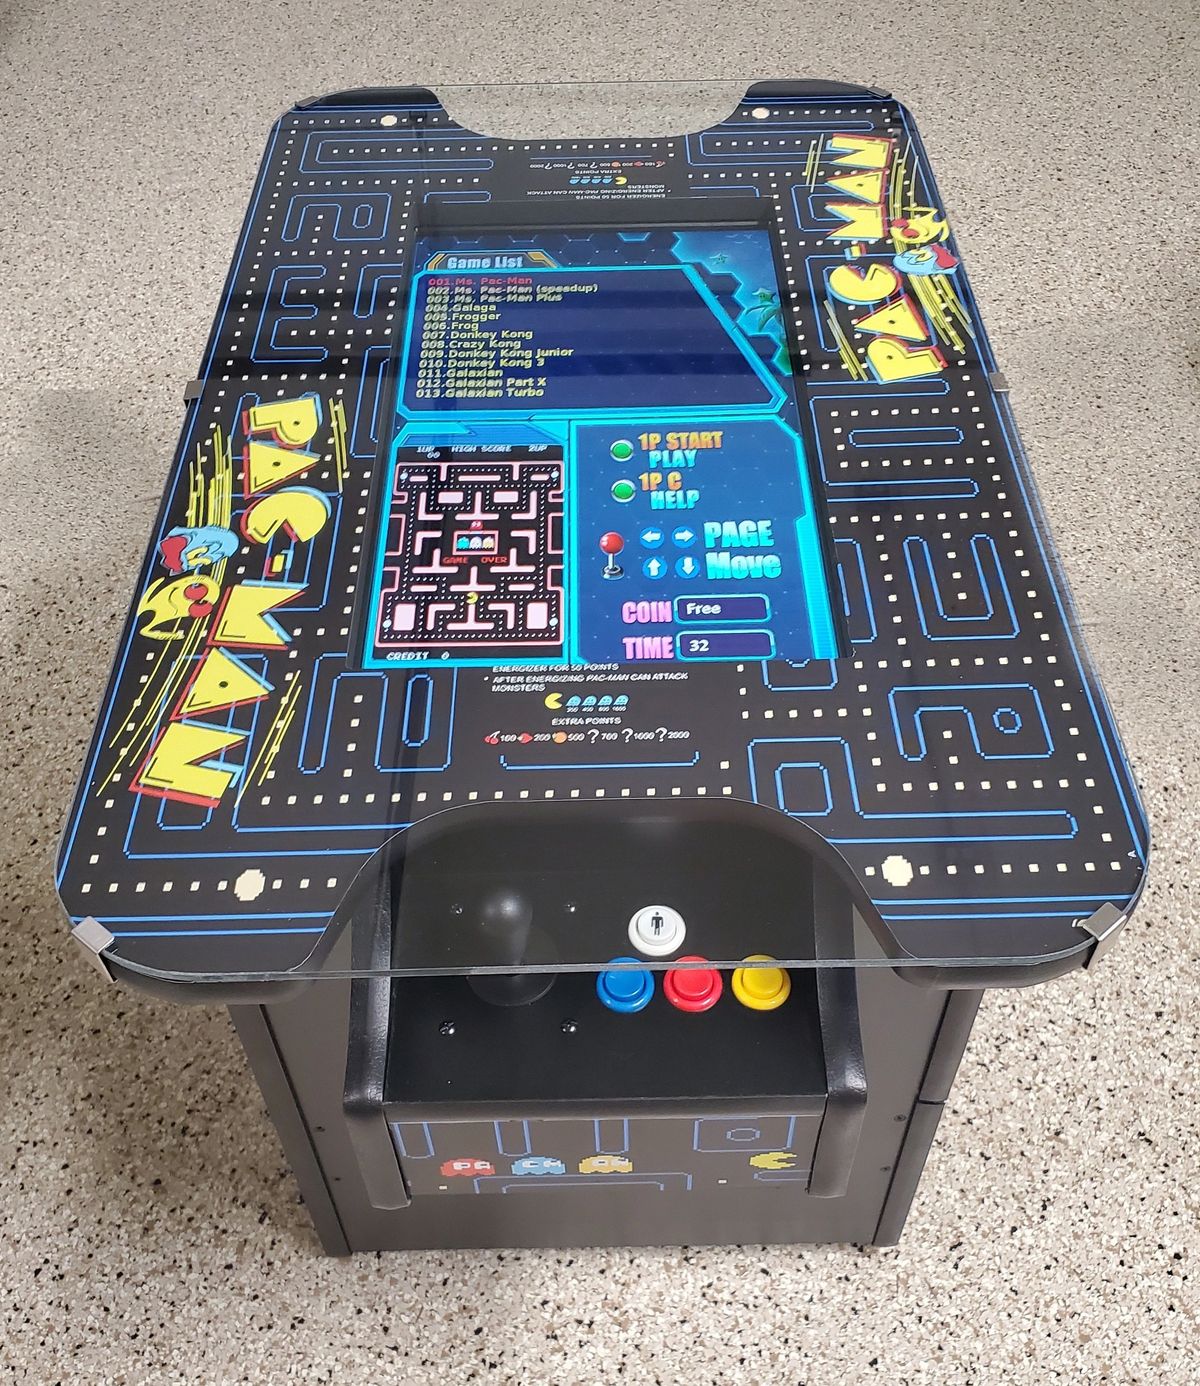 pacman tabletop arcade game